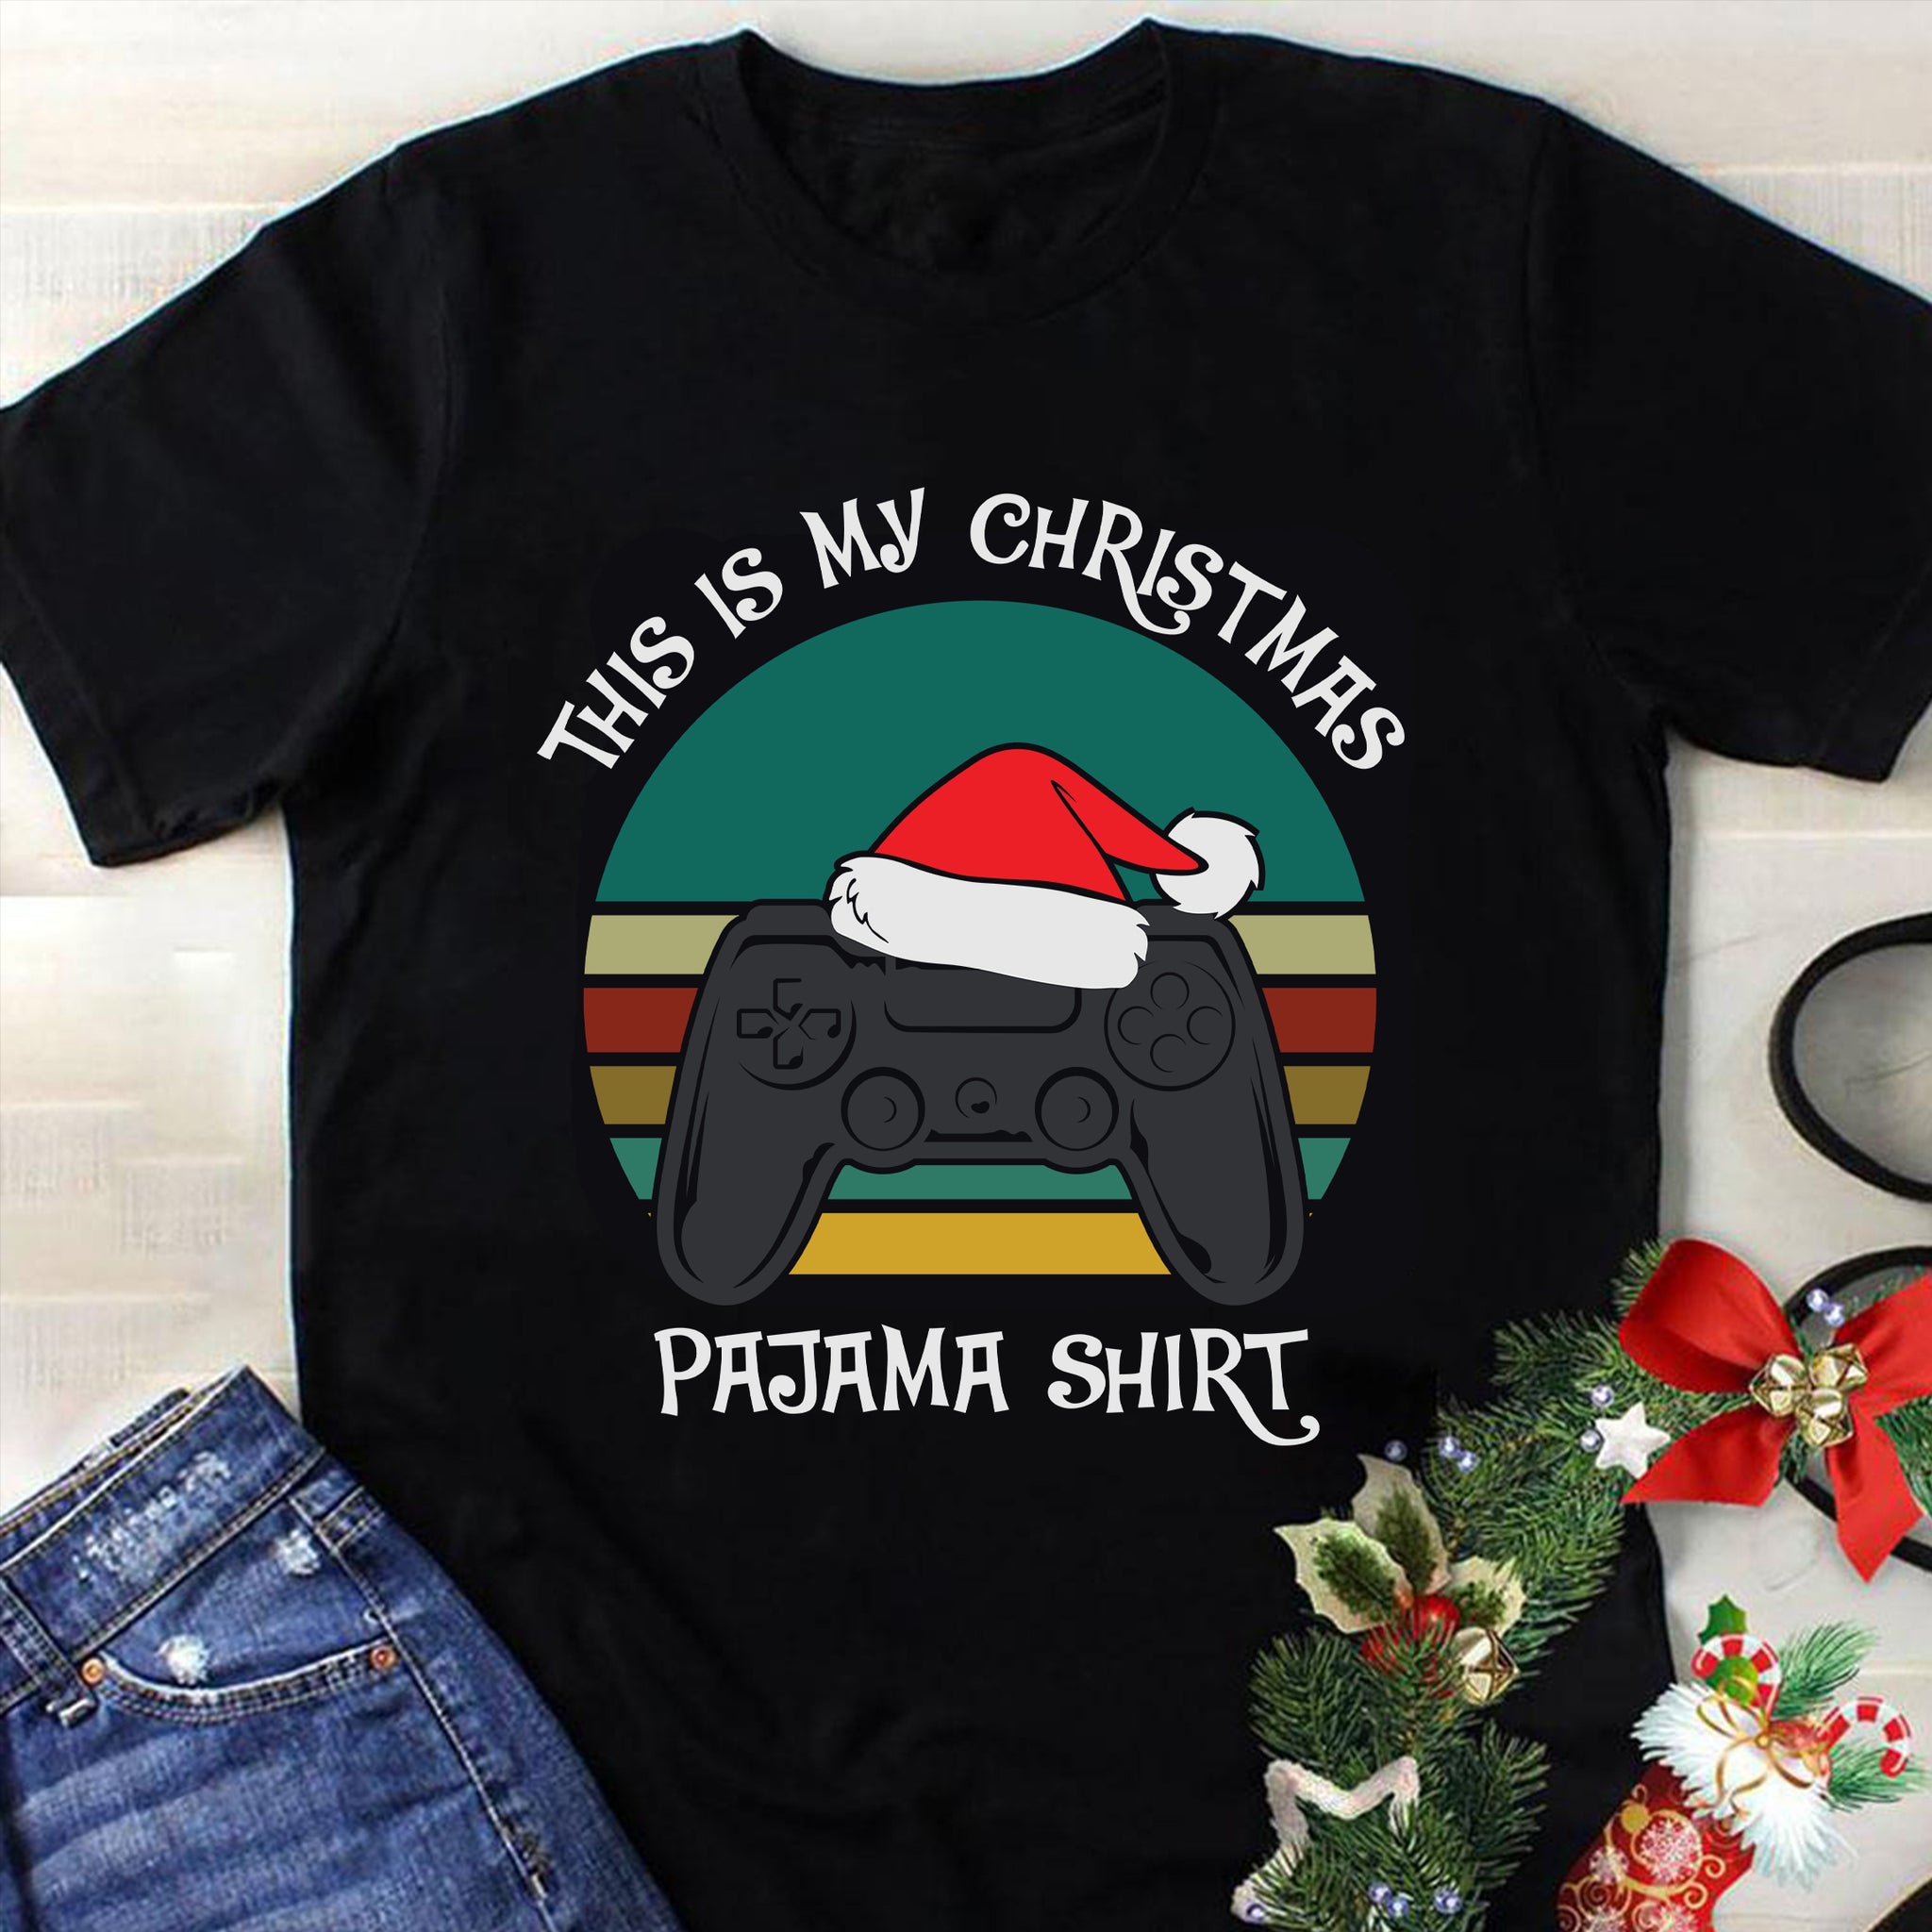 This Is My Christmas Pajama Shirt Game Svg, Christmas Svg, Tree Christmas Svg, Tree Svg, Santa Svg, Snow Svg, Merry Christmas Svg, Hat Santa Svg, Light Christmas Svg